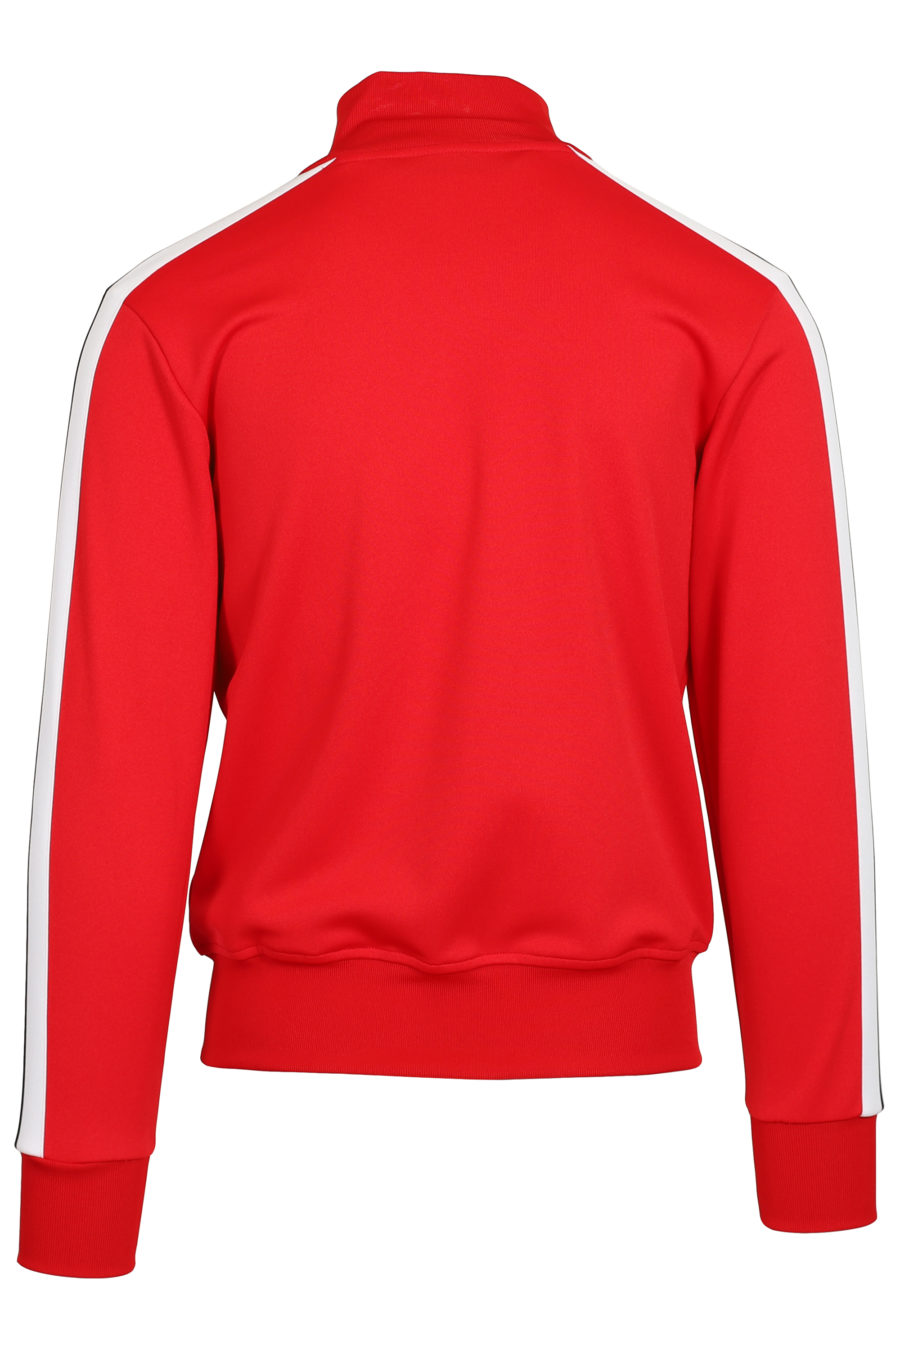 Chaqueta roja con logotipo y rayas laterales - IMG 3681